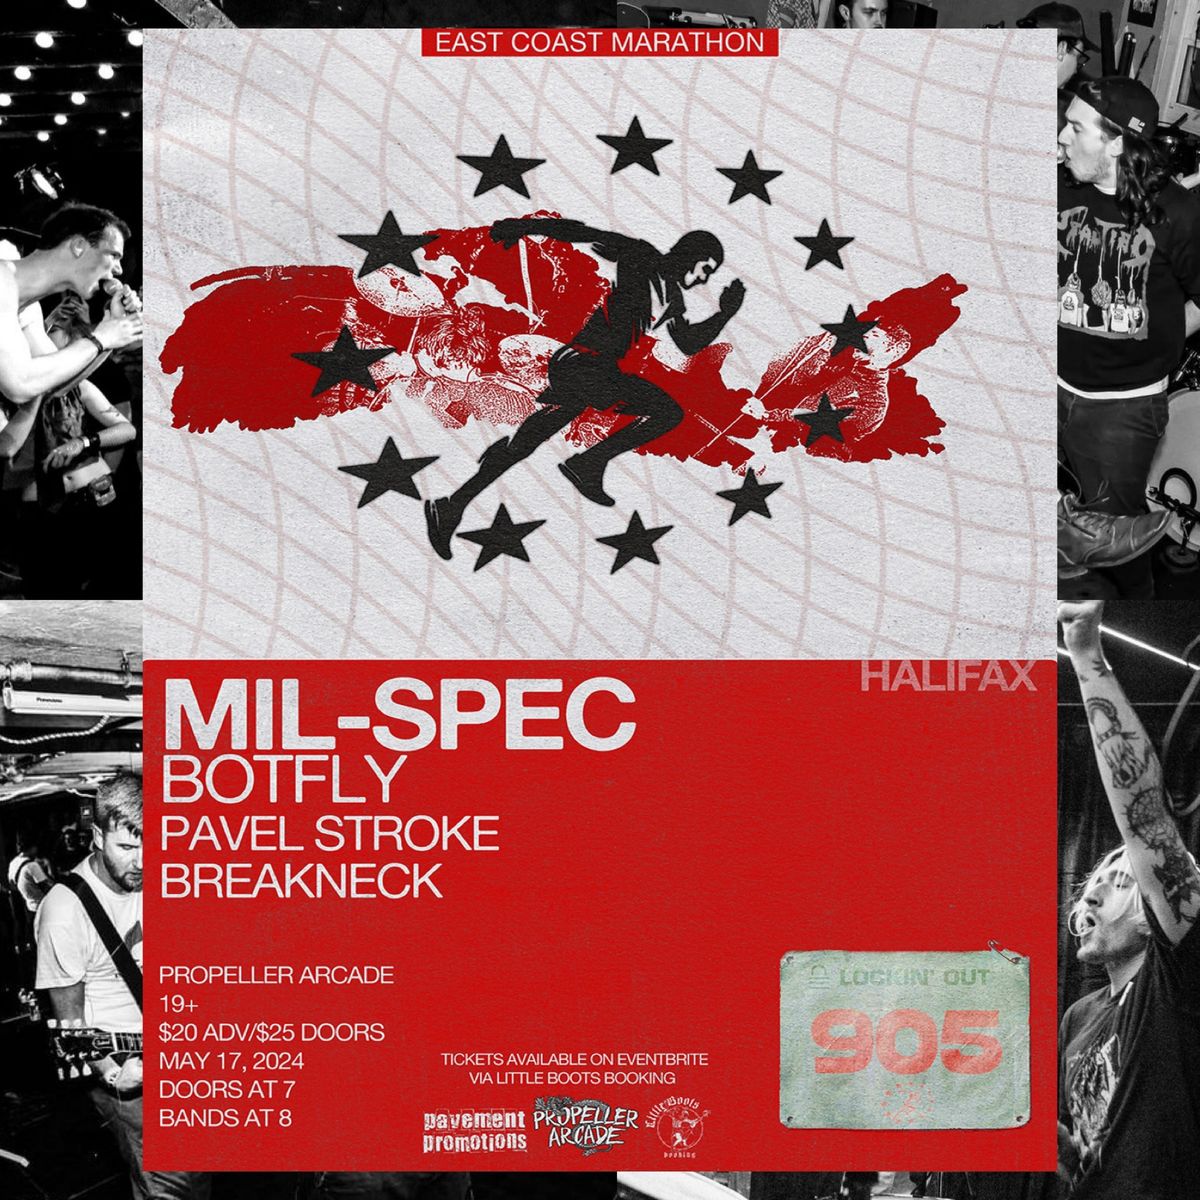 MIL-SPEC X BOTFLY w Pavel Stroke & Breakneck @ Propeller Arcade